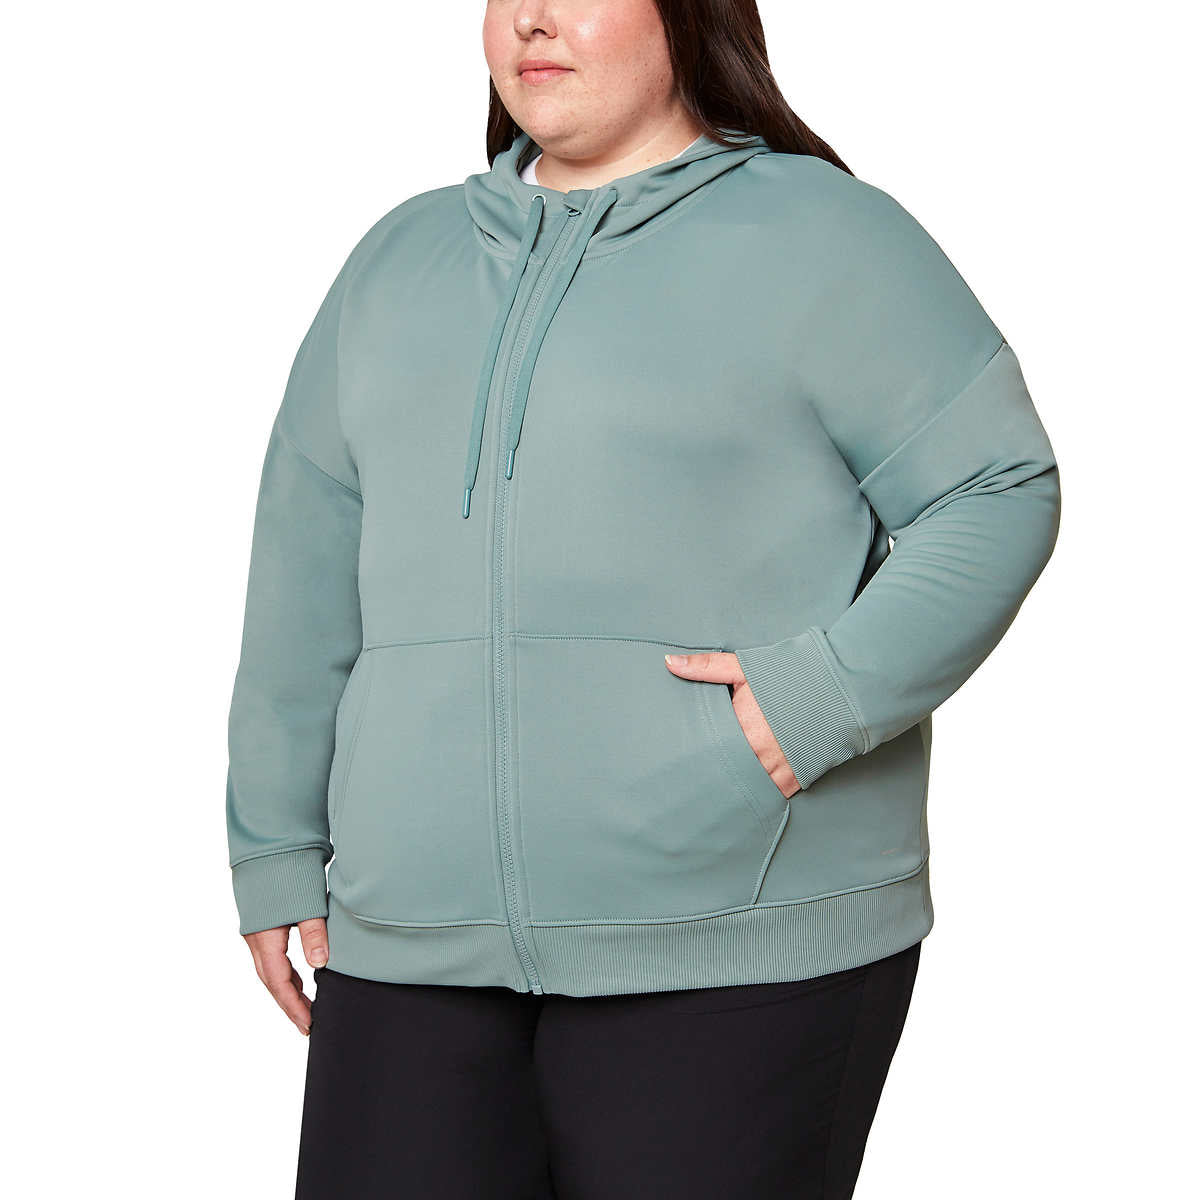 Mondetta Women's Fleece Grey Zip Up Sweater / Size XXLarge